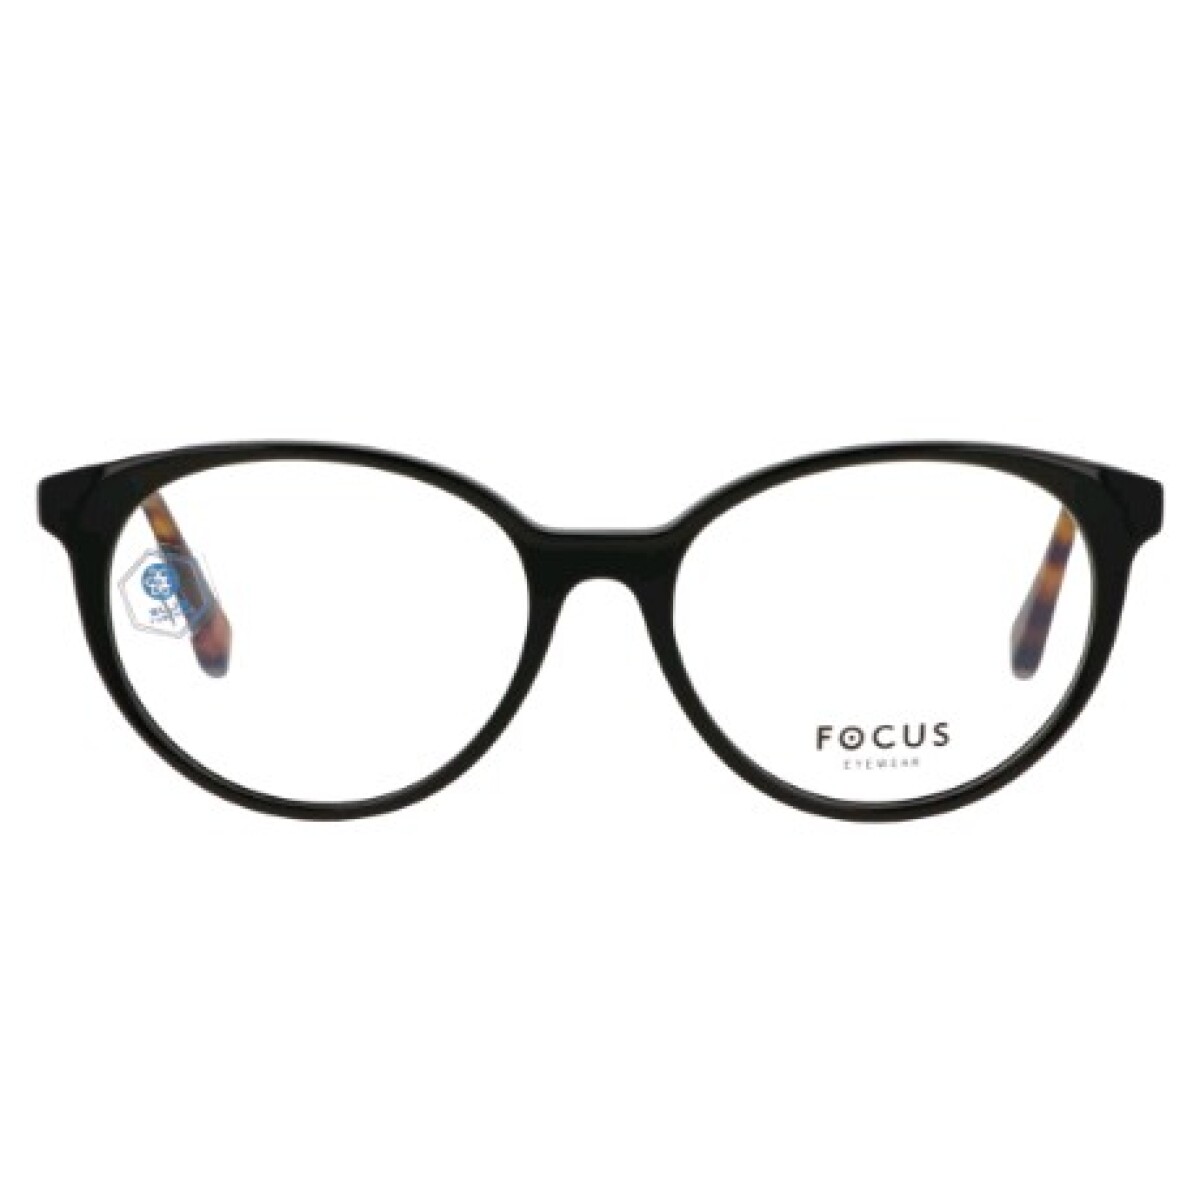 Focus Premium 373 Negro-Marrón 